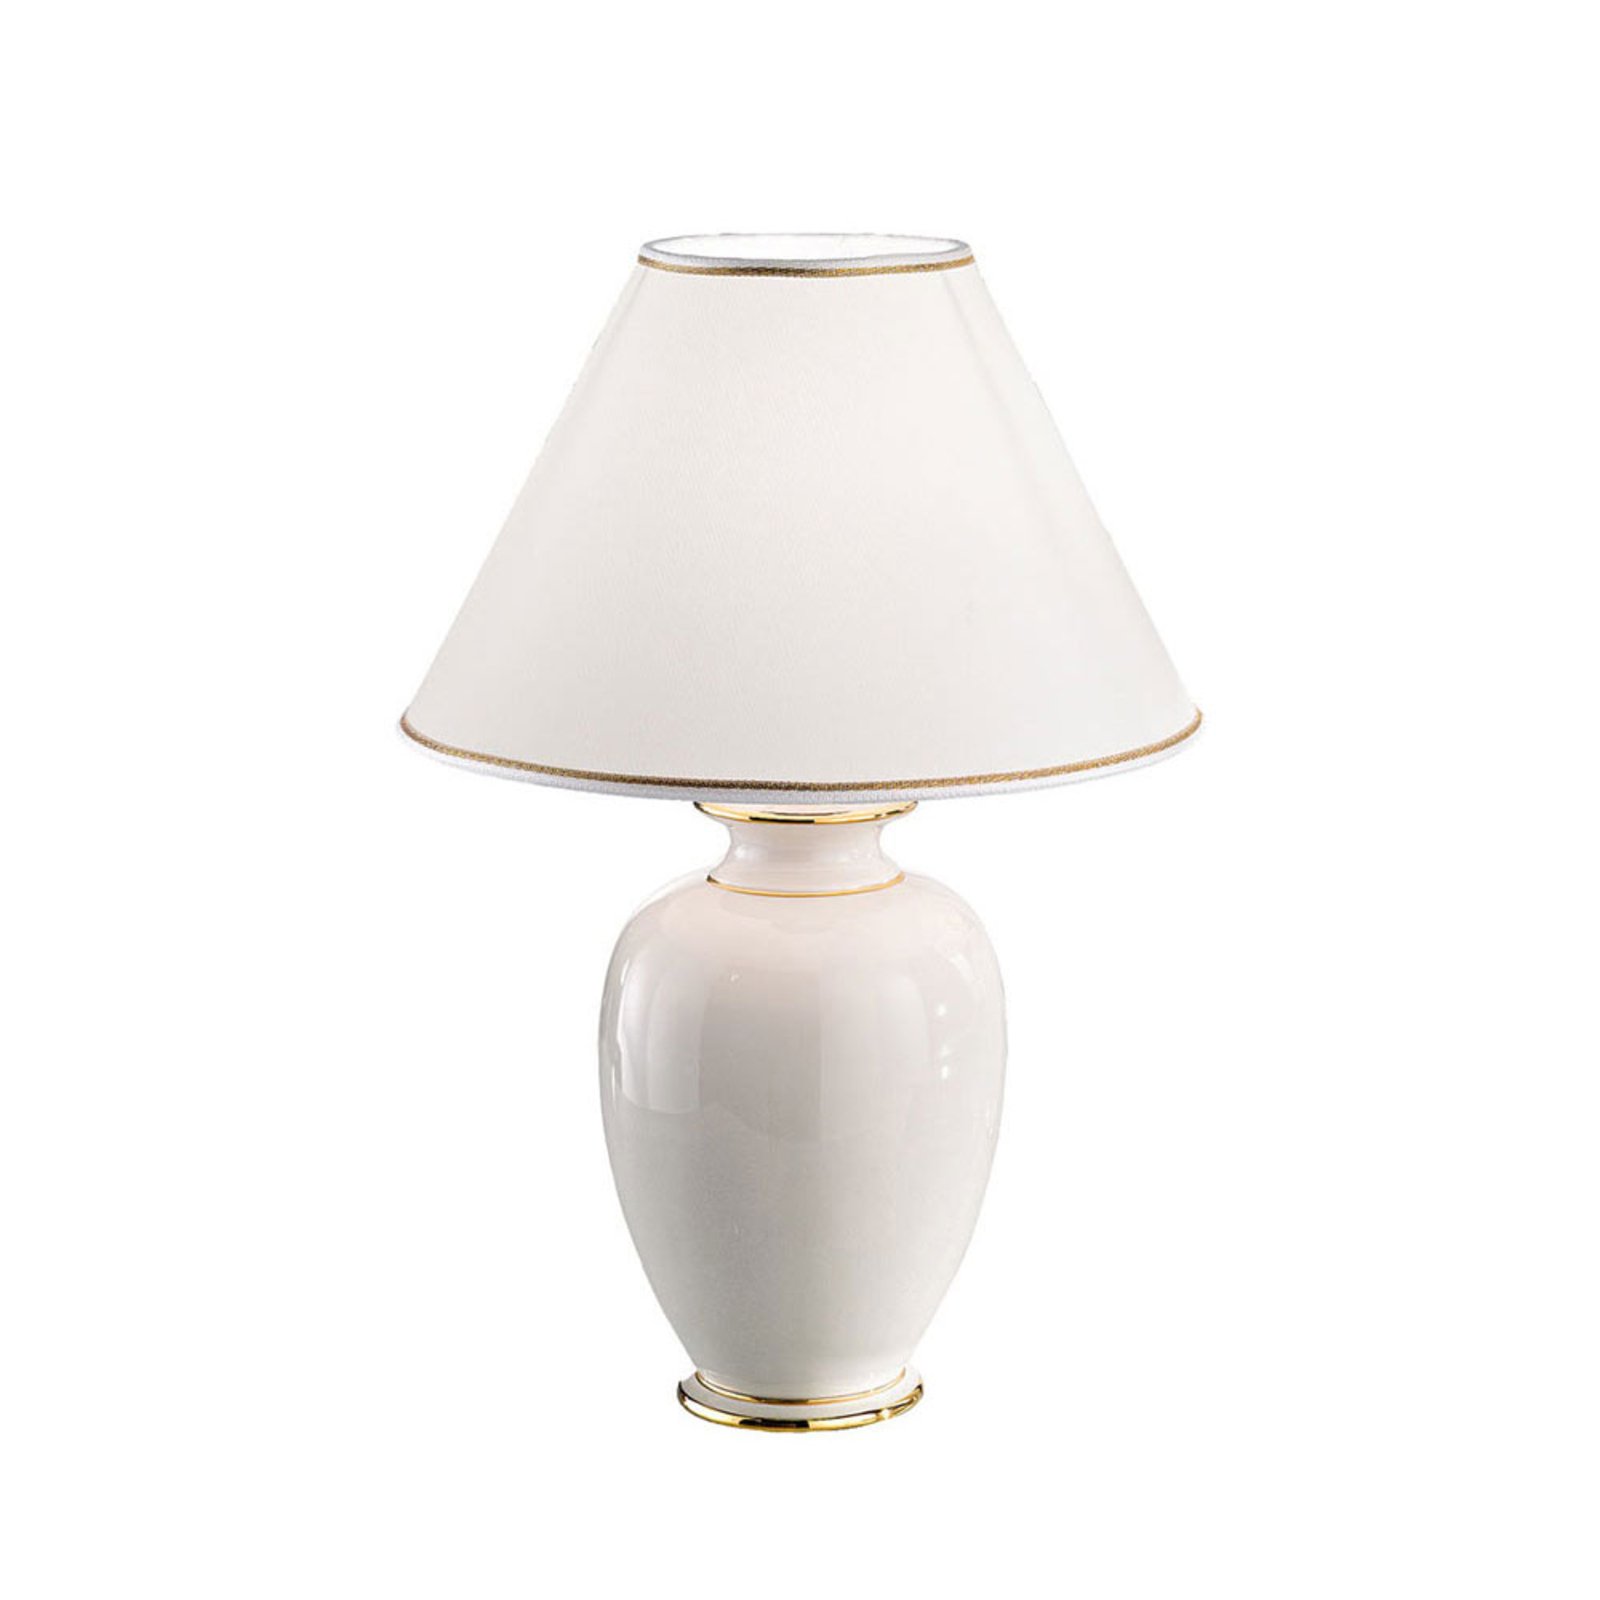 Asztali lámpa Giardino Avorio fehér arany, Ø 30 cm